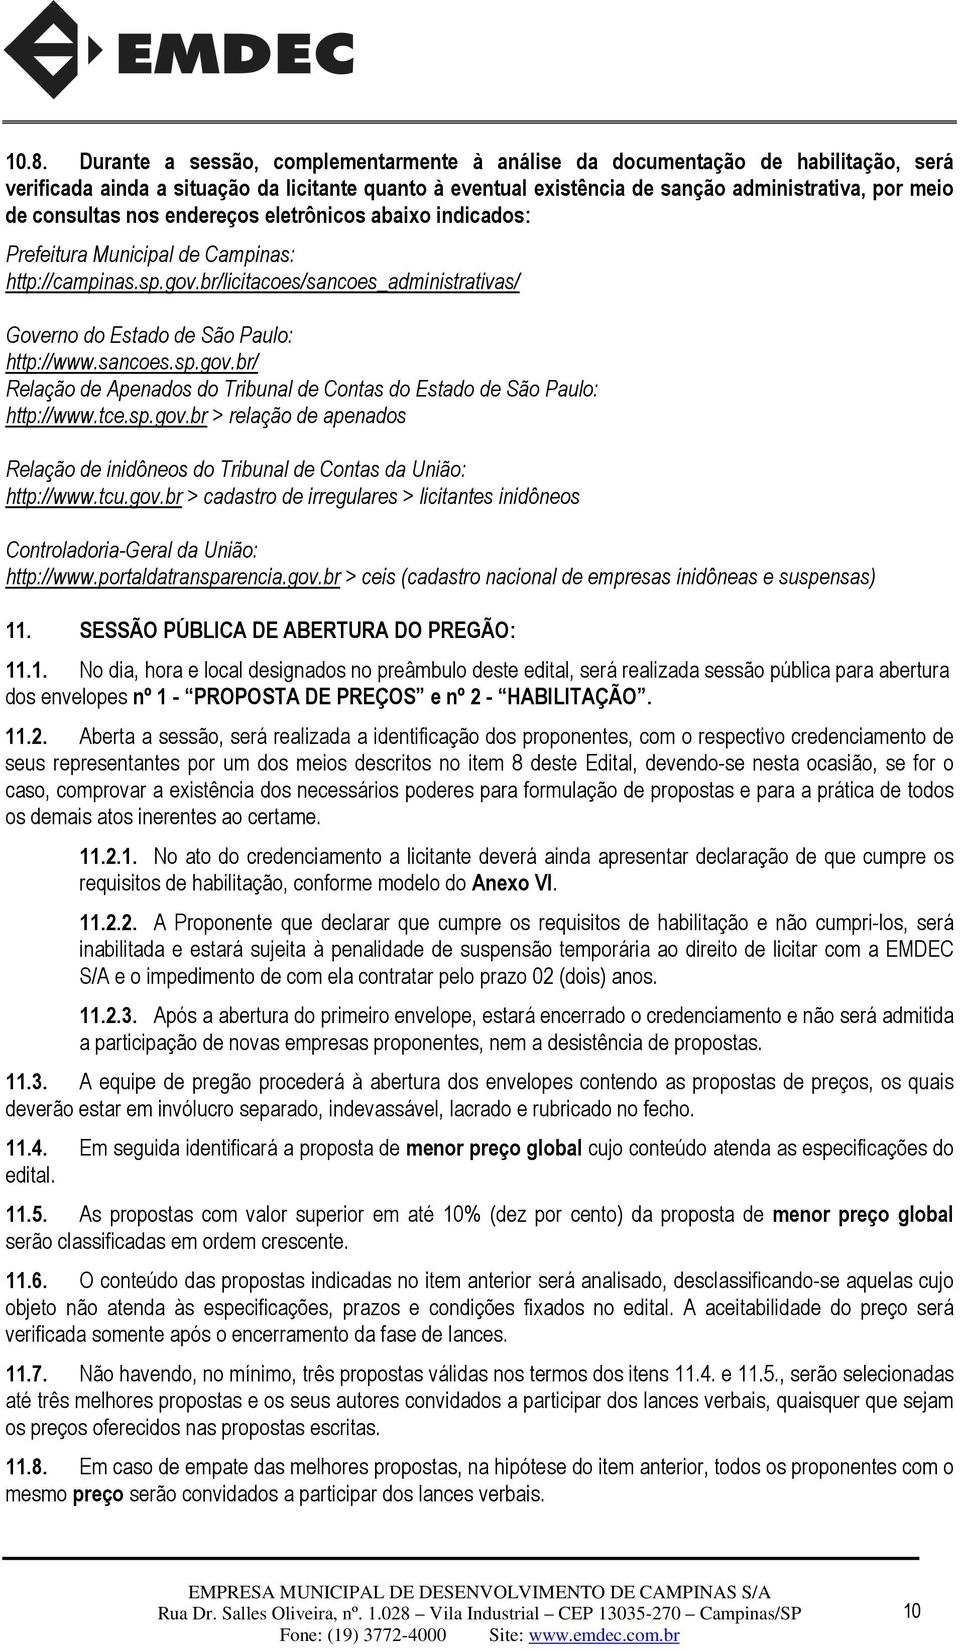 sancoes.sp.gov.br/ Relação de Apenados do Tribunal de Contas do Estado de São Paulo: http://www.tce.sp.gov.br > relação de apenados Relação de inidôneos do Tribunal de Contas da União: http://www.tcu.